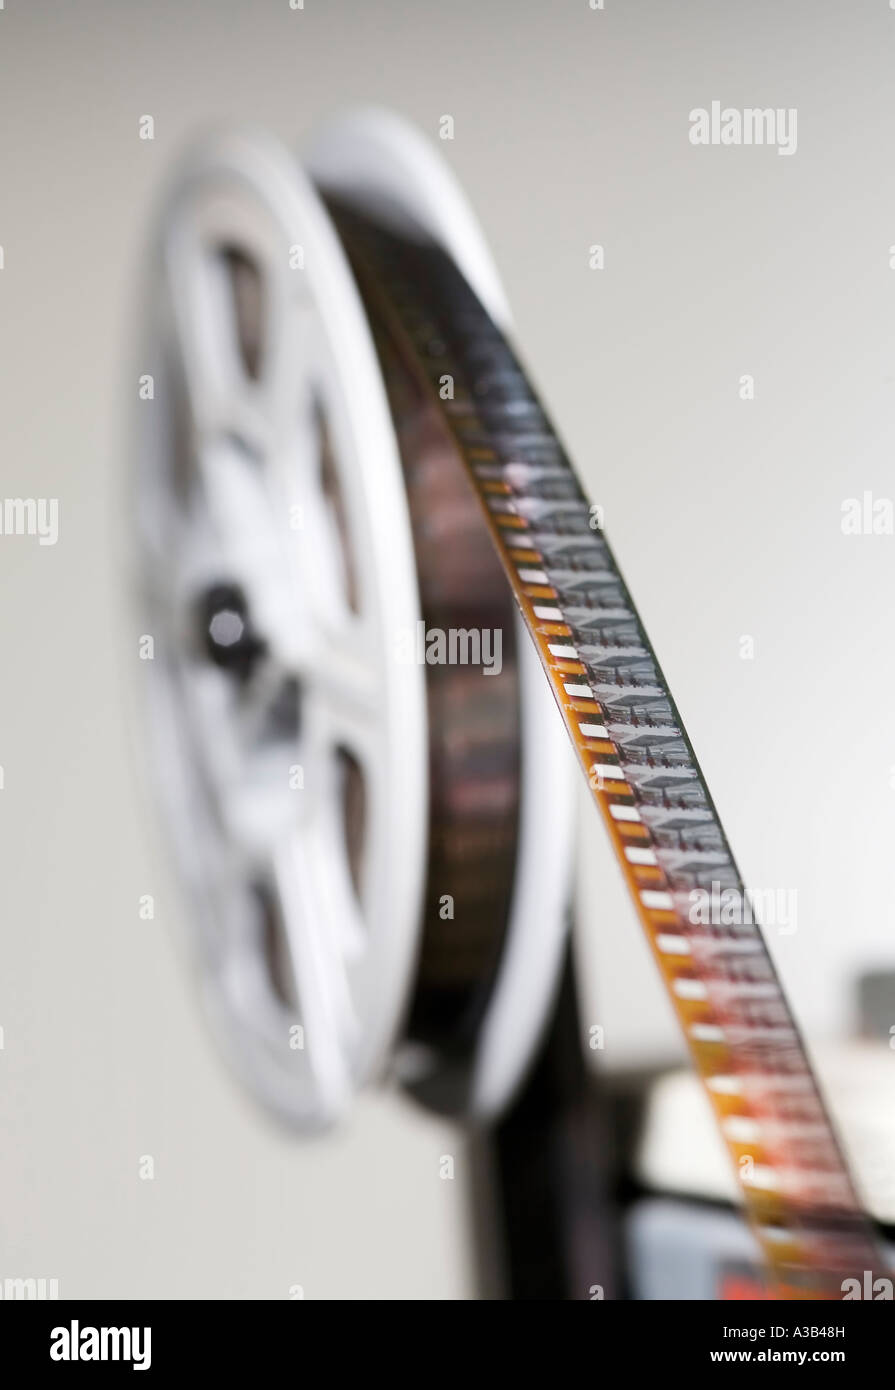 Amateur 8mm cine film sulla bobina del proiettore con profondità di campo incentrato su alcuni frame di pellicola Foto Stock